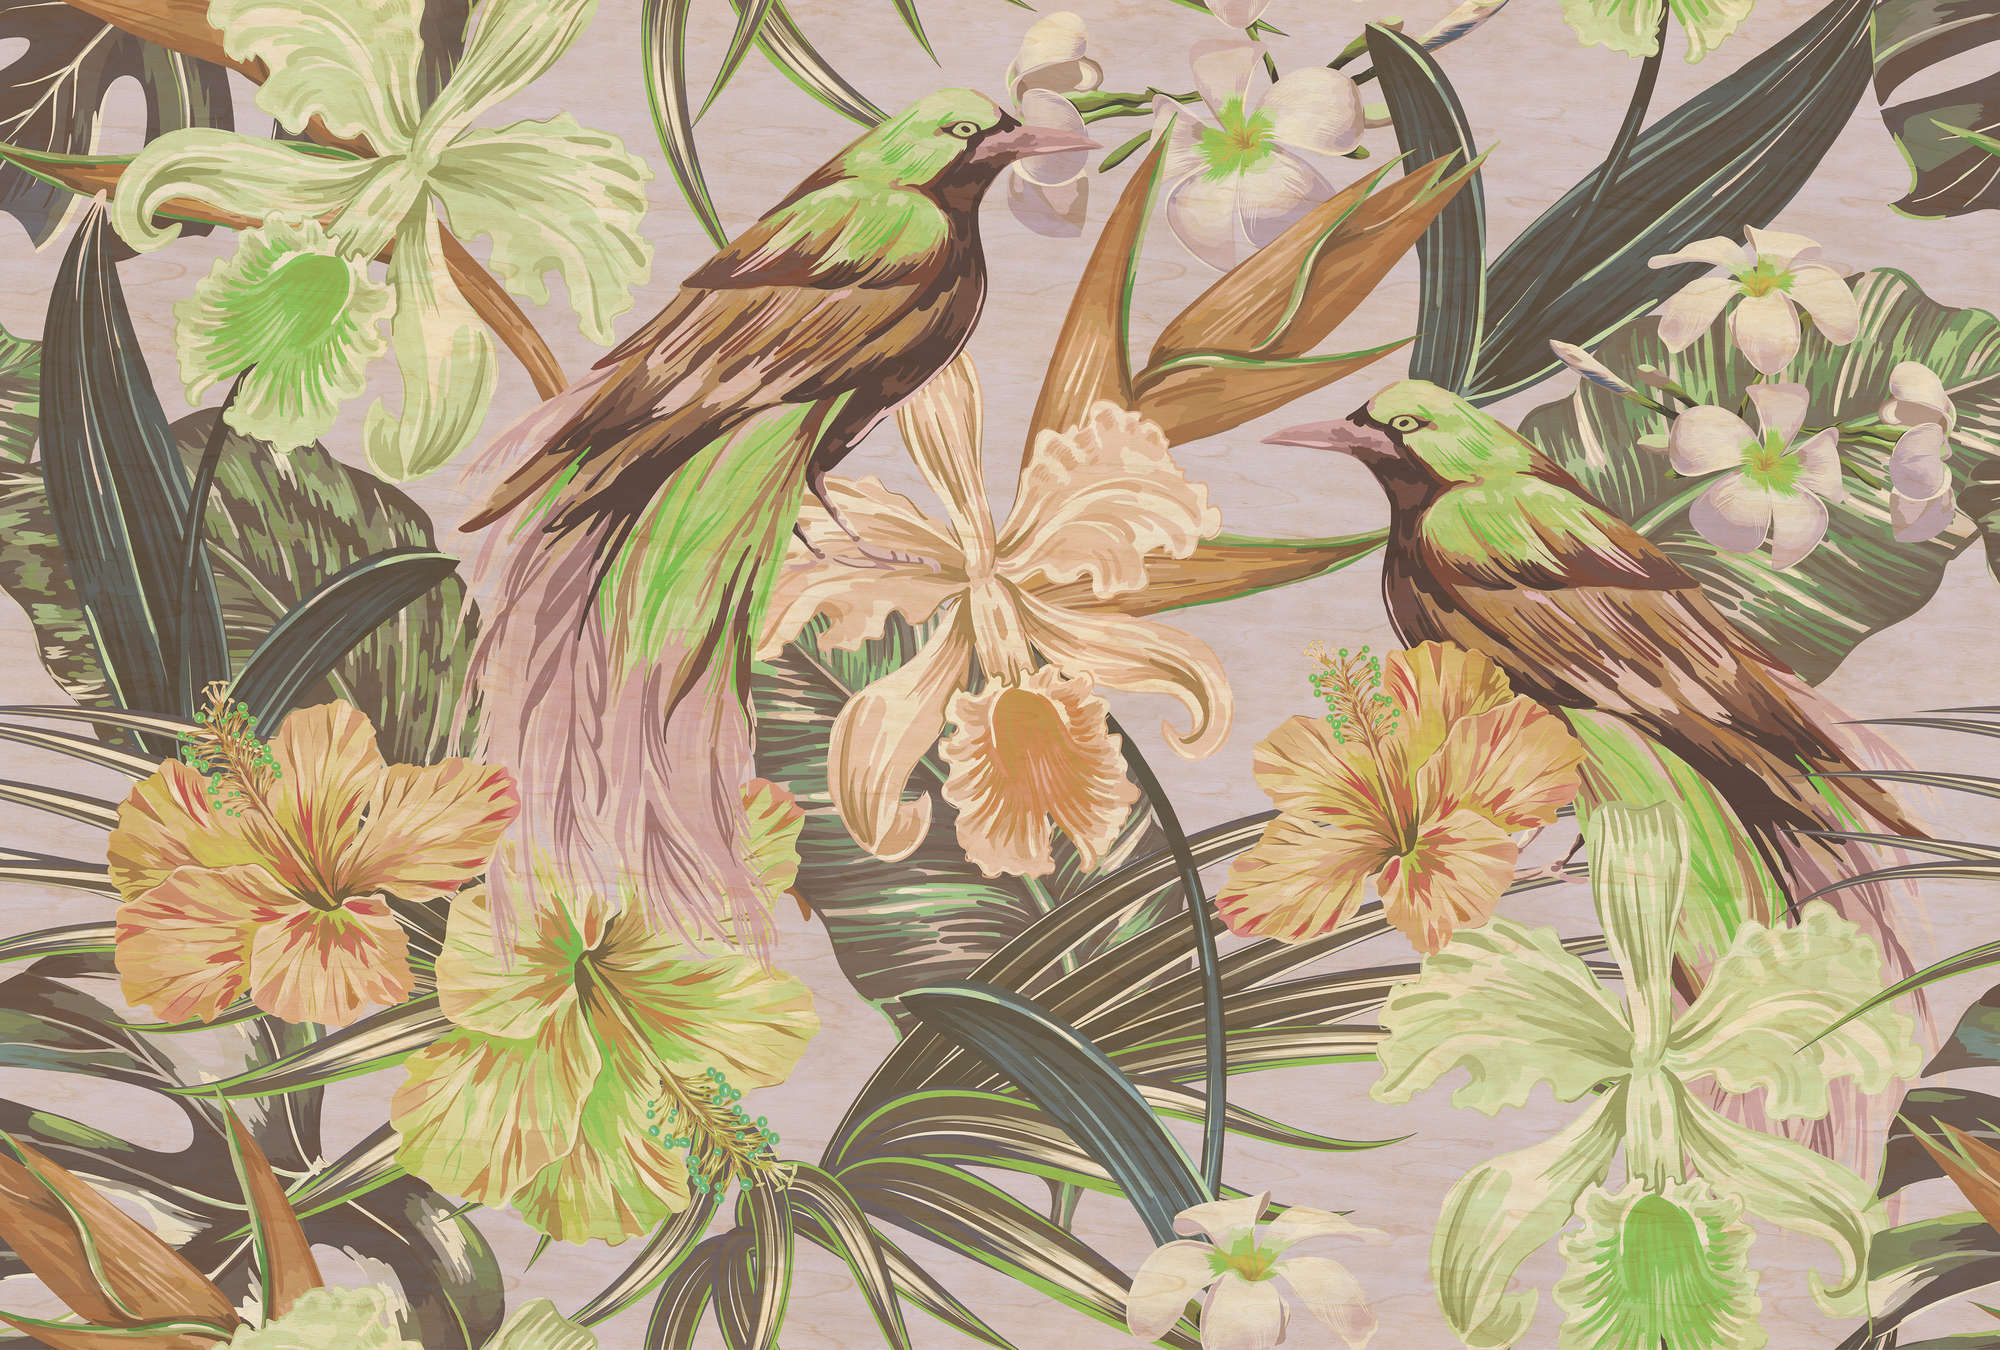             Uccelli esotici 2 - Fotomurali uccelli e piante esotiche - texture graffiata - Beige, Verde | texture tessuto non tessuto
        